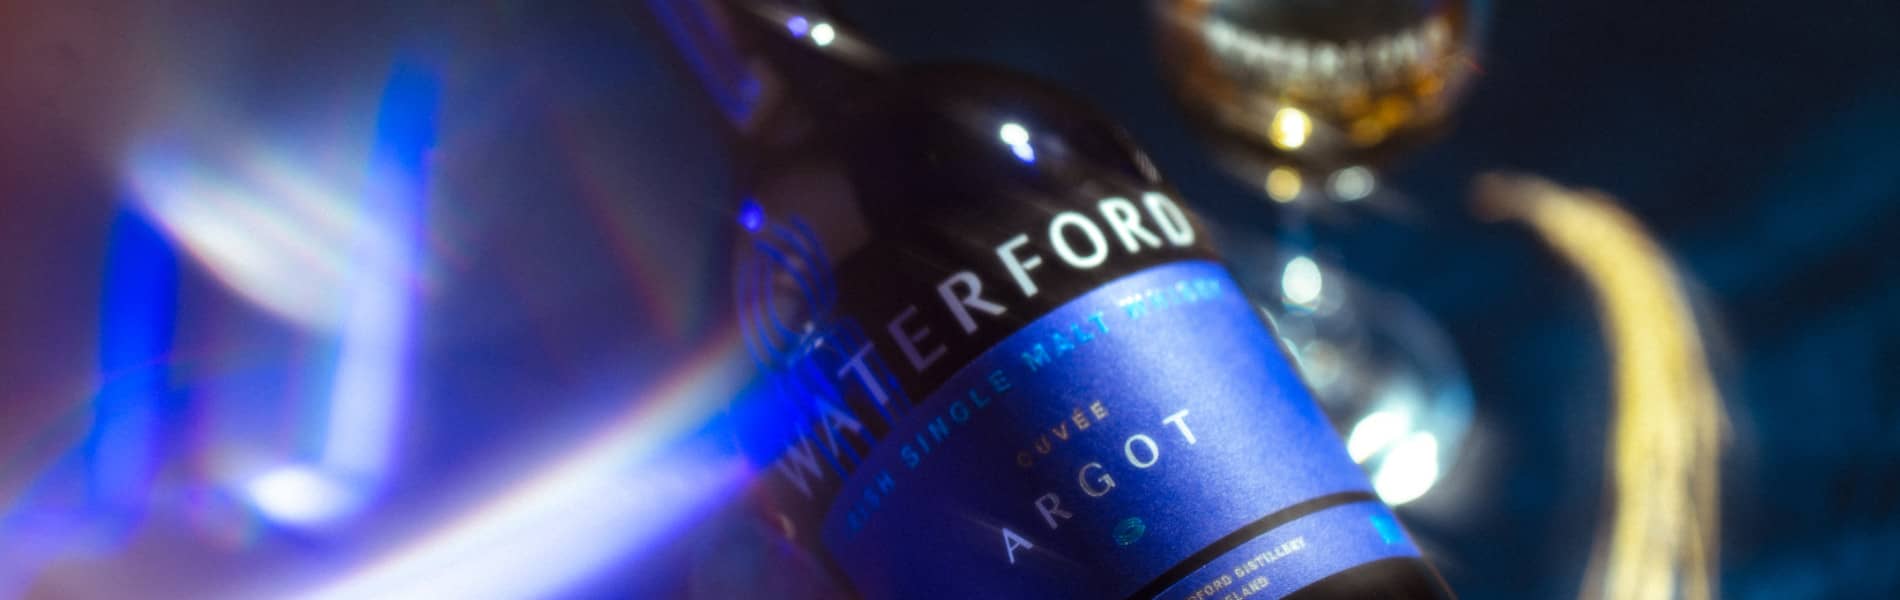 Waterford Argot : le single malt irlandais en rupture dans la continuité